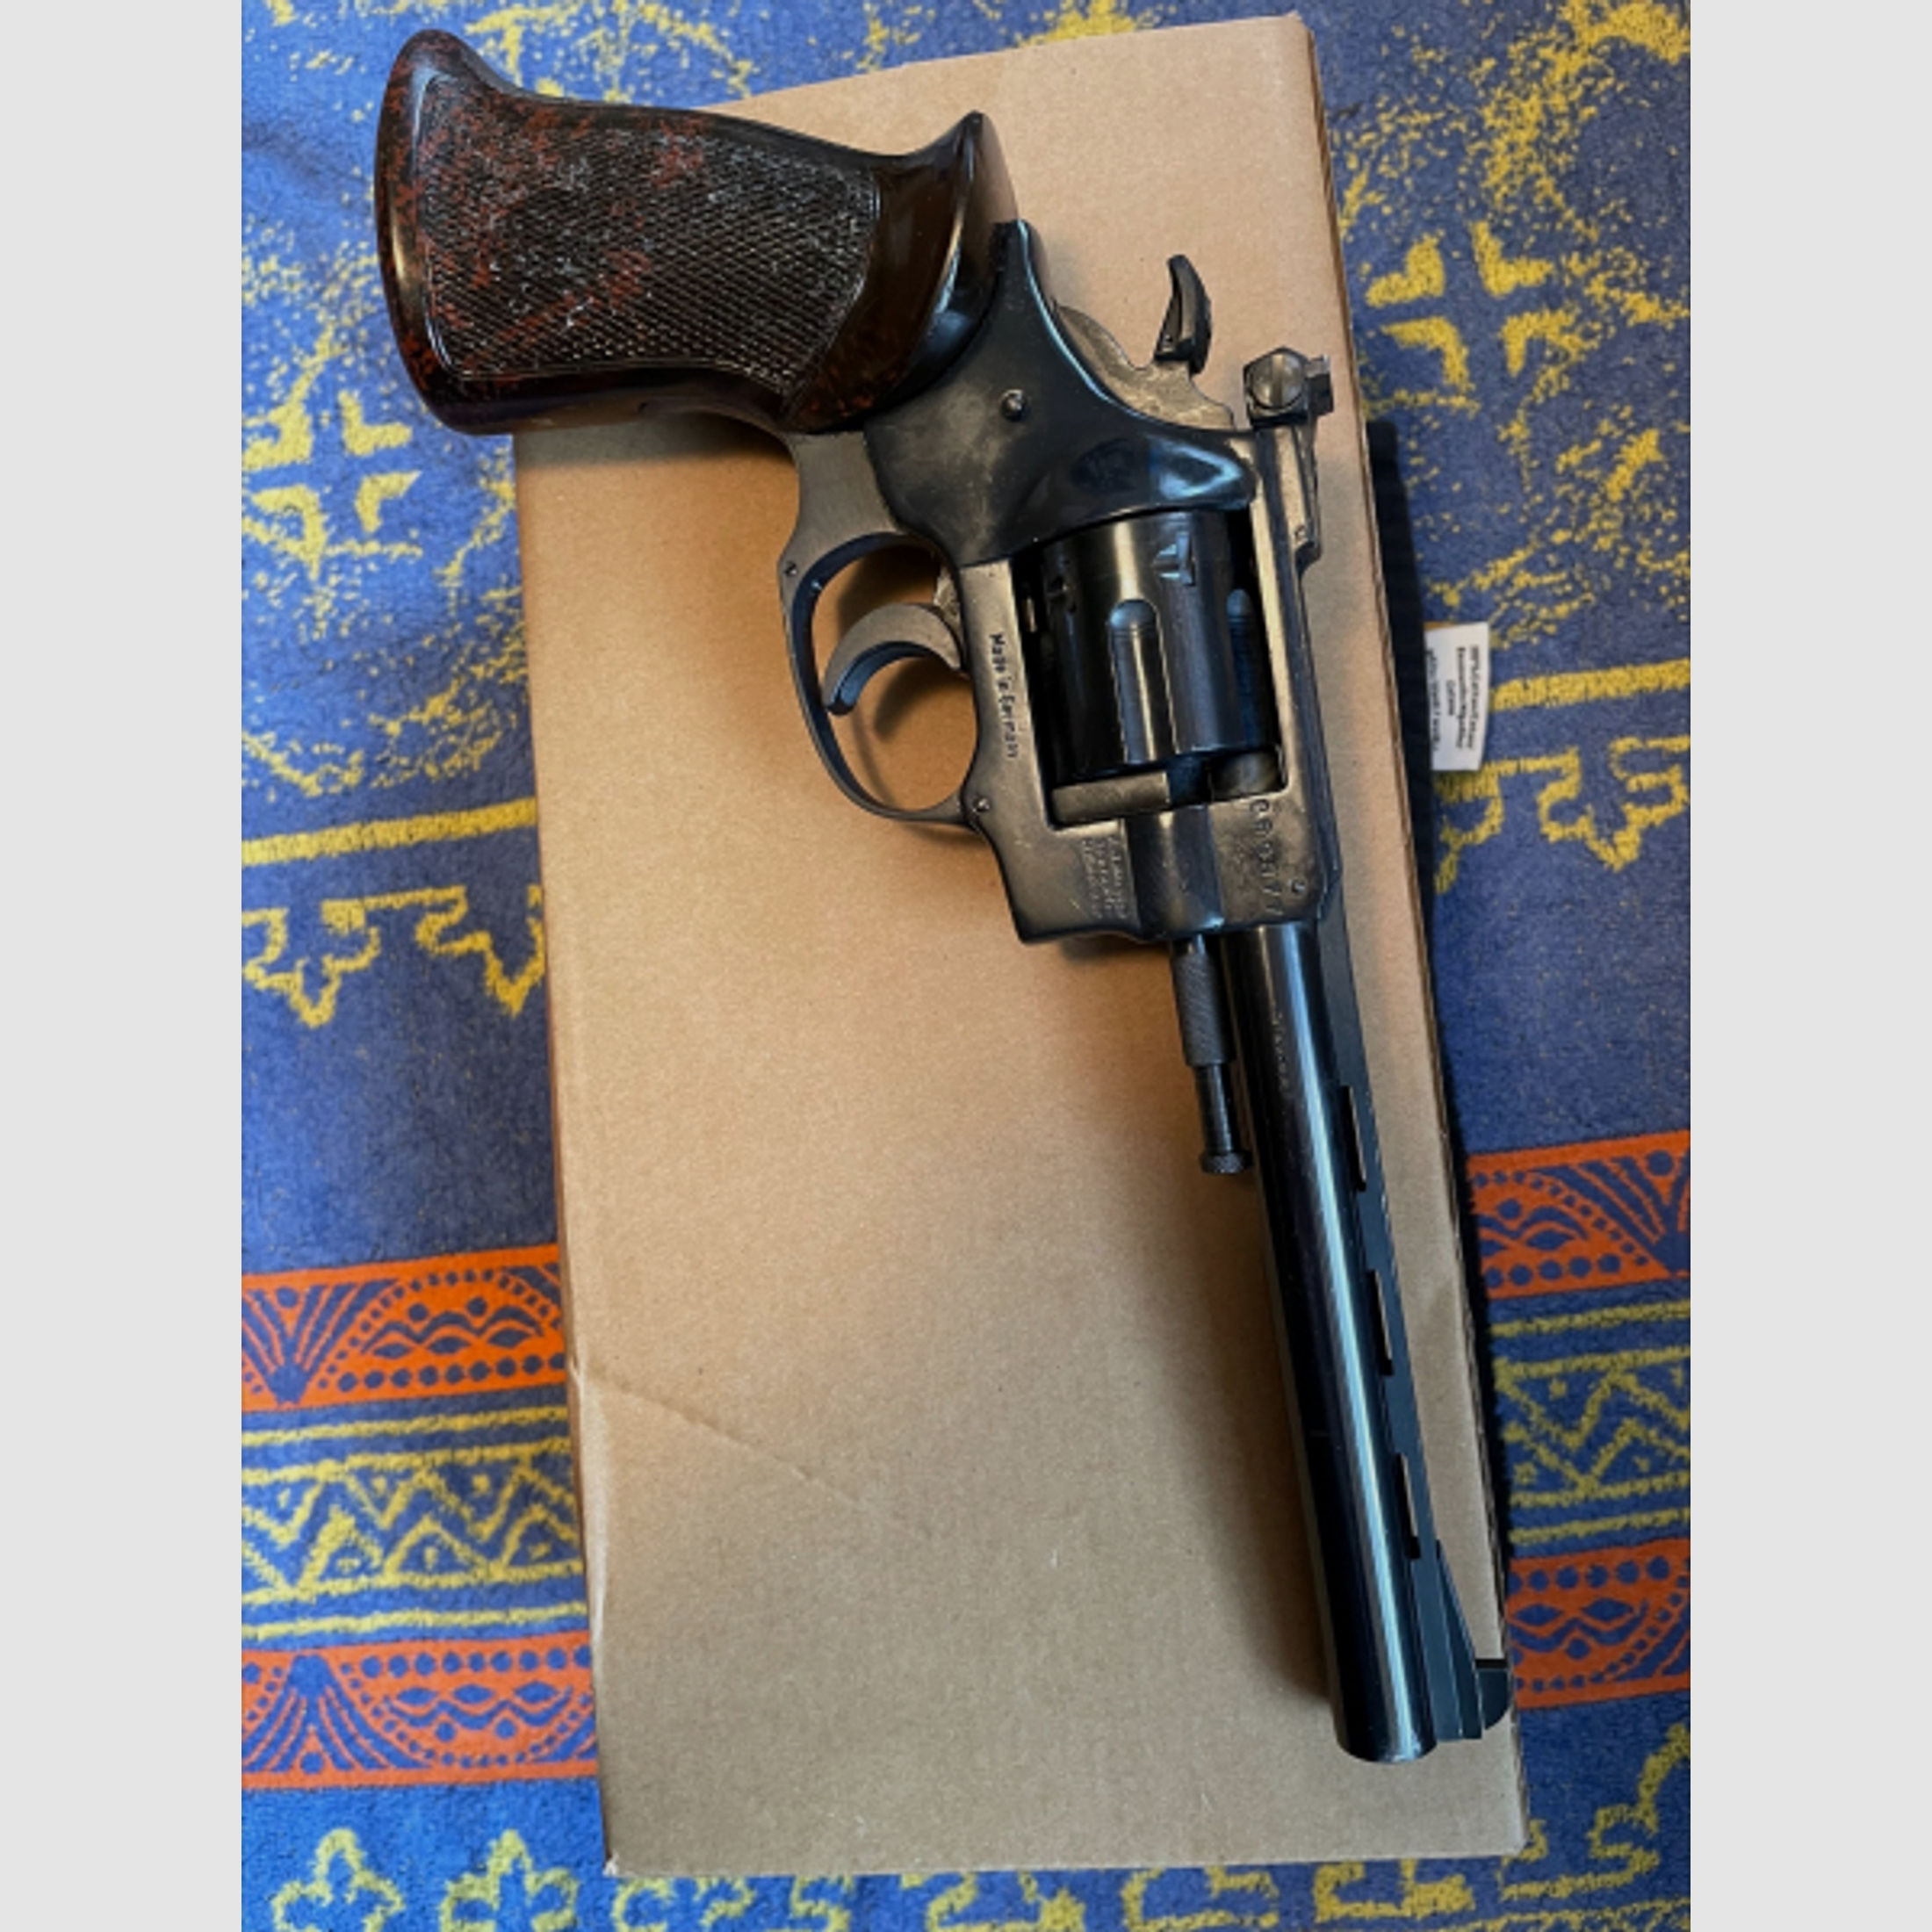 Weihrauch Arminius Revolver HW9 kal.22lr. 6"